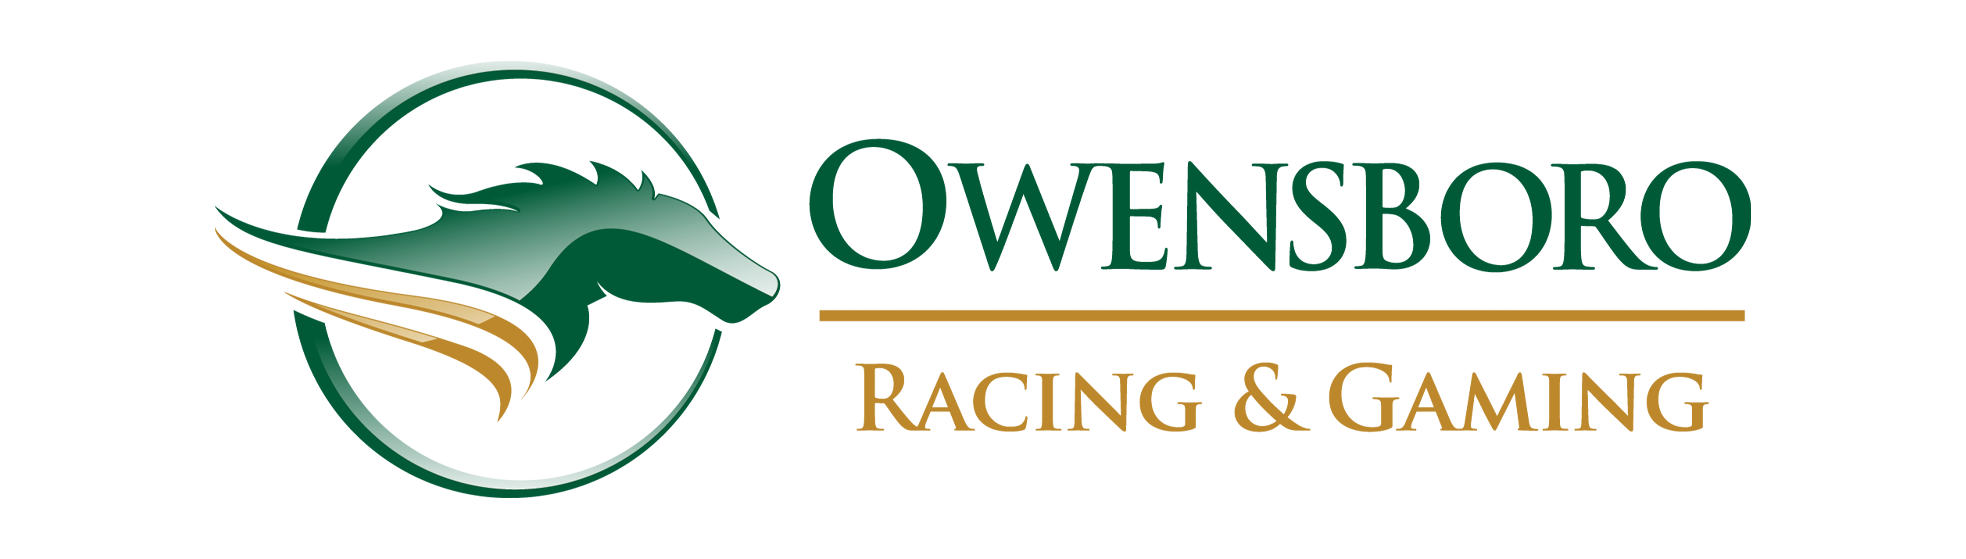 Owensboro Racing and Gaming